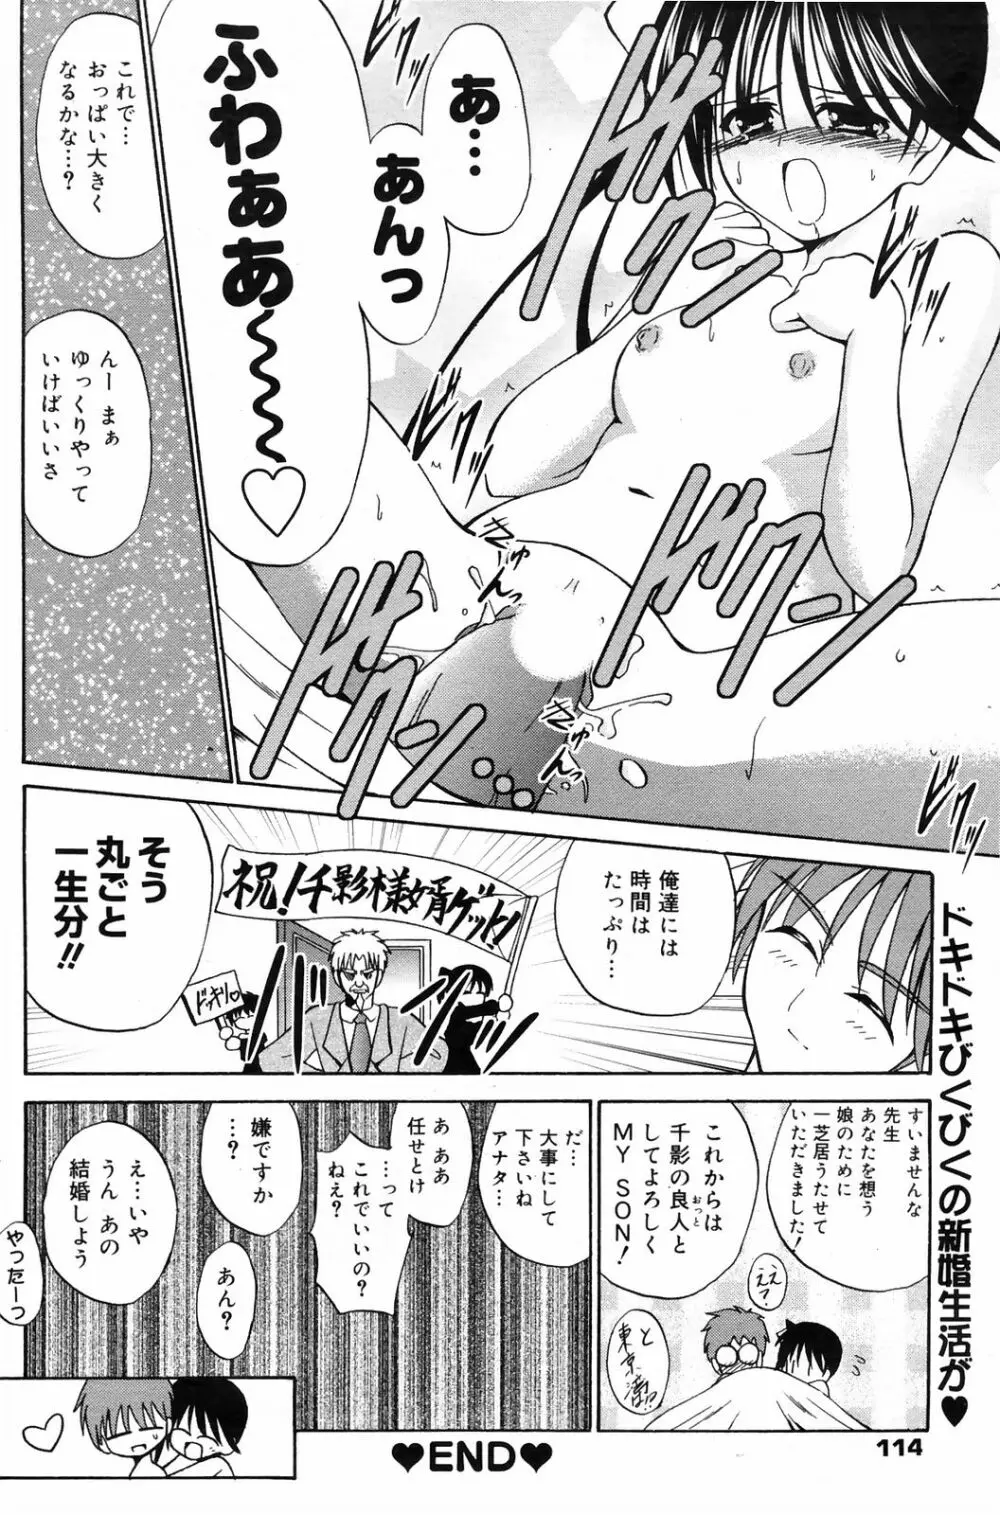 Manga Bangaichi 2009-01 114ページ